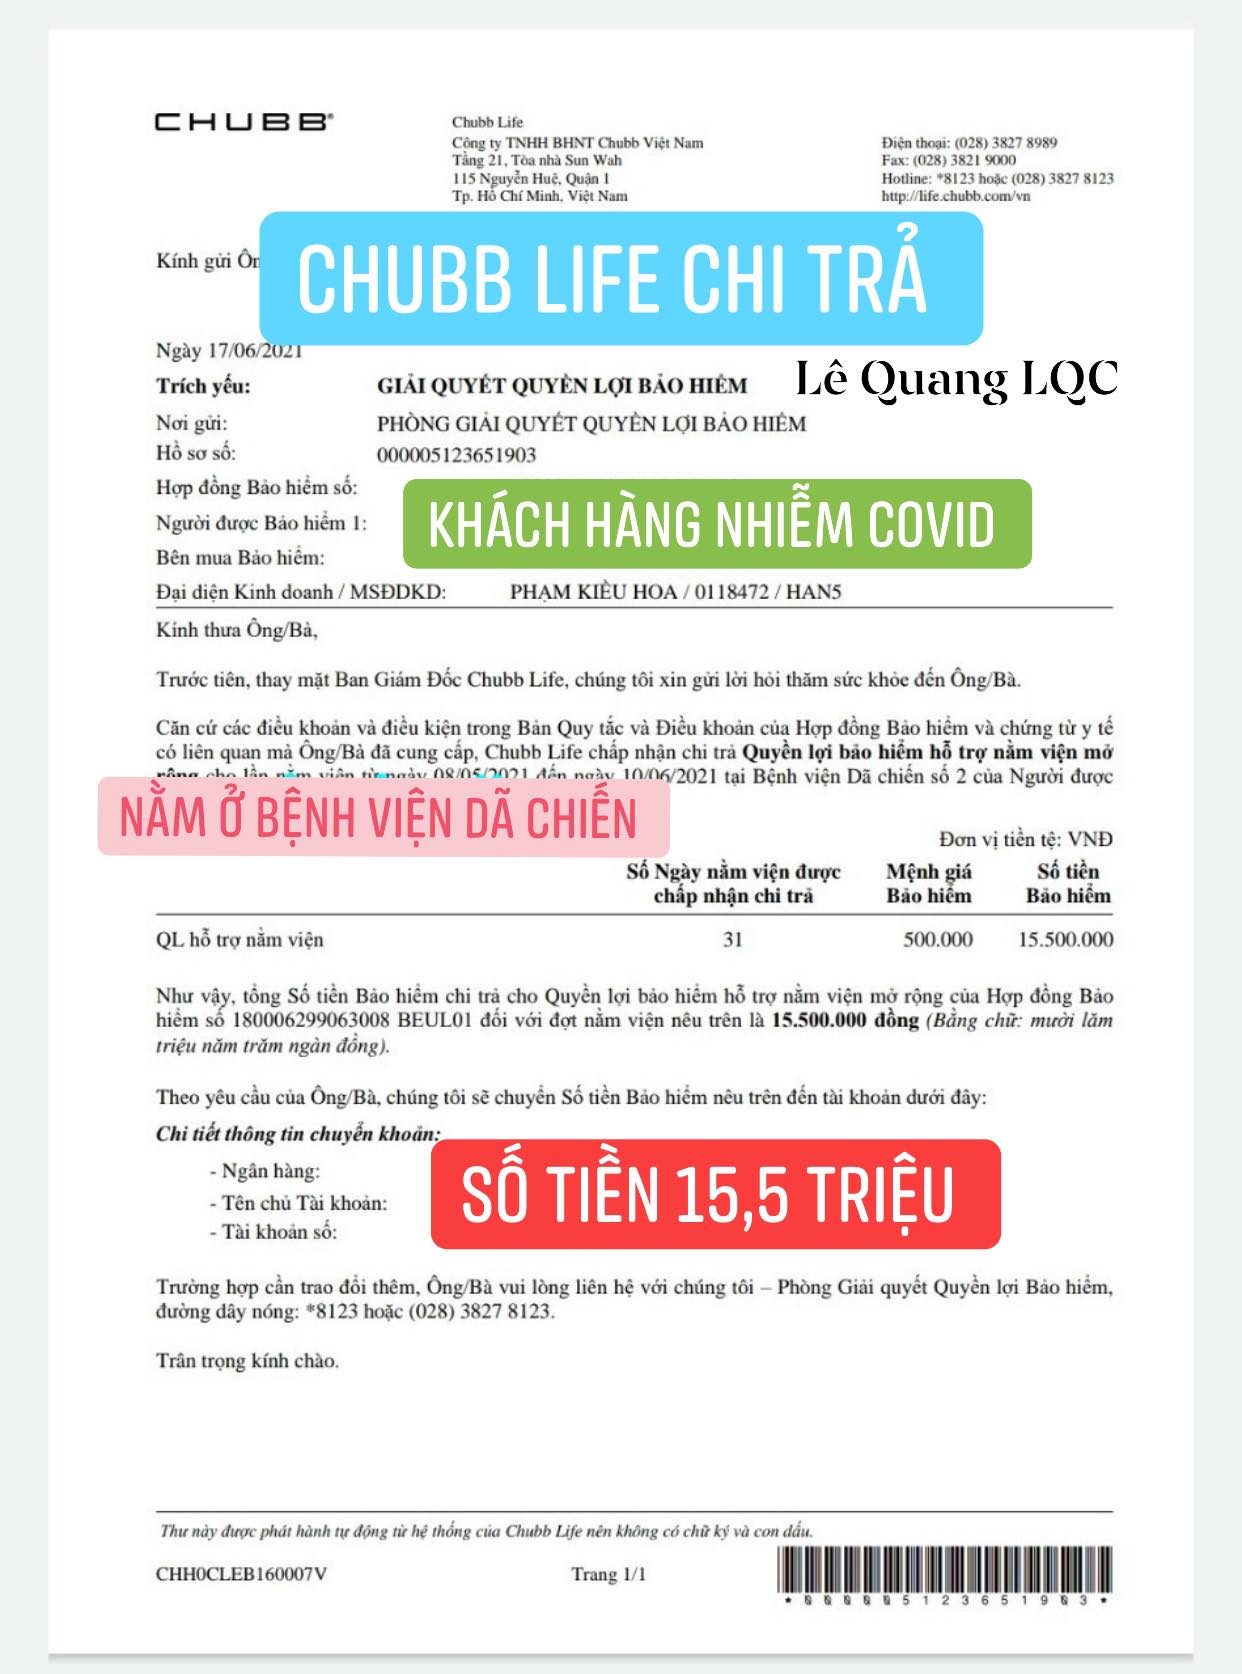 Thư Chi trả từ Chubb Life